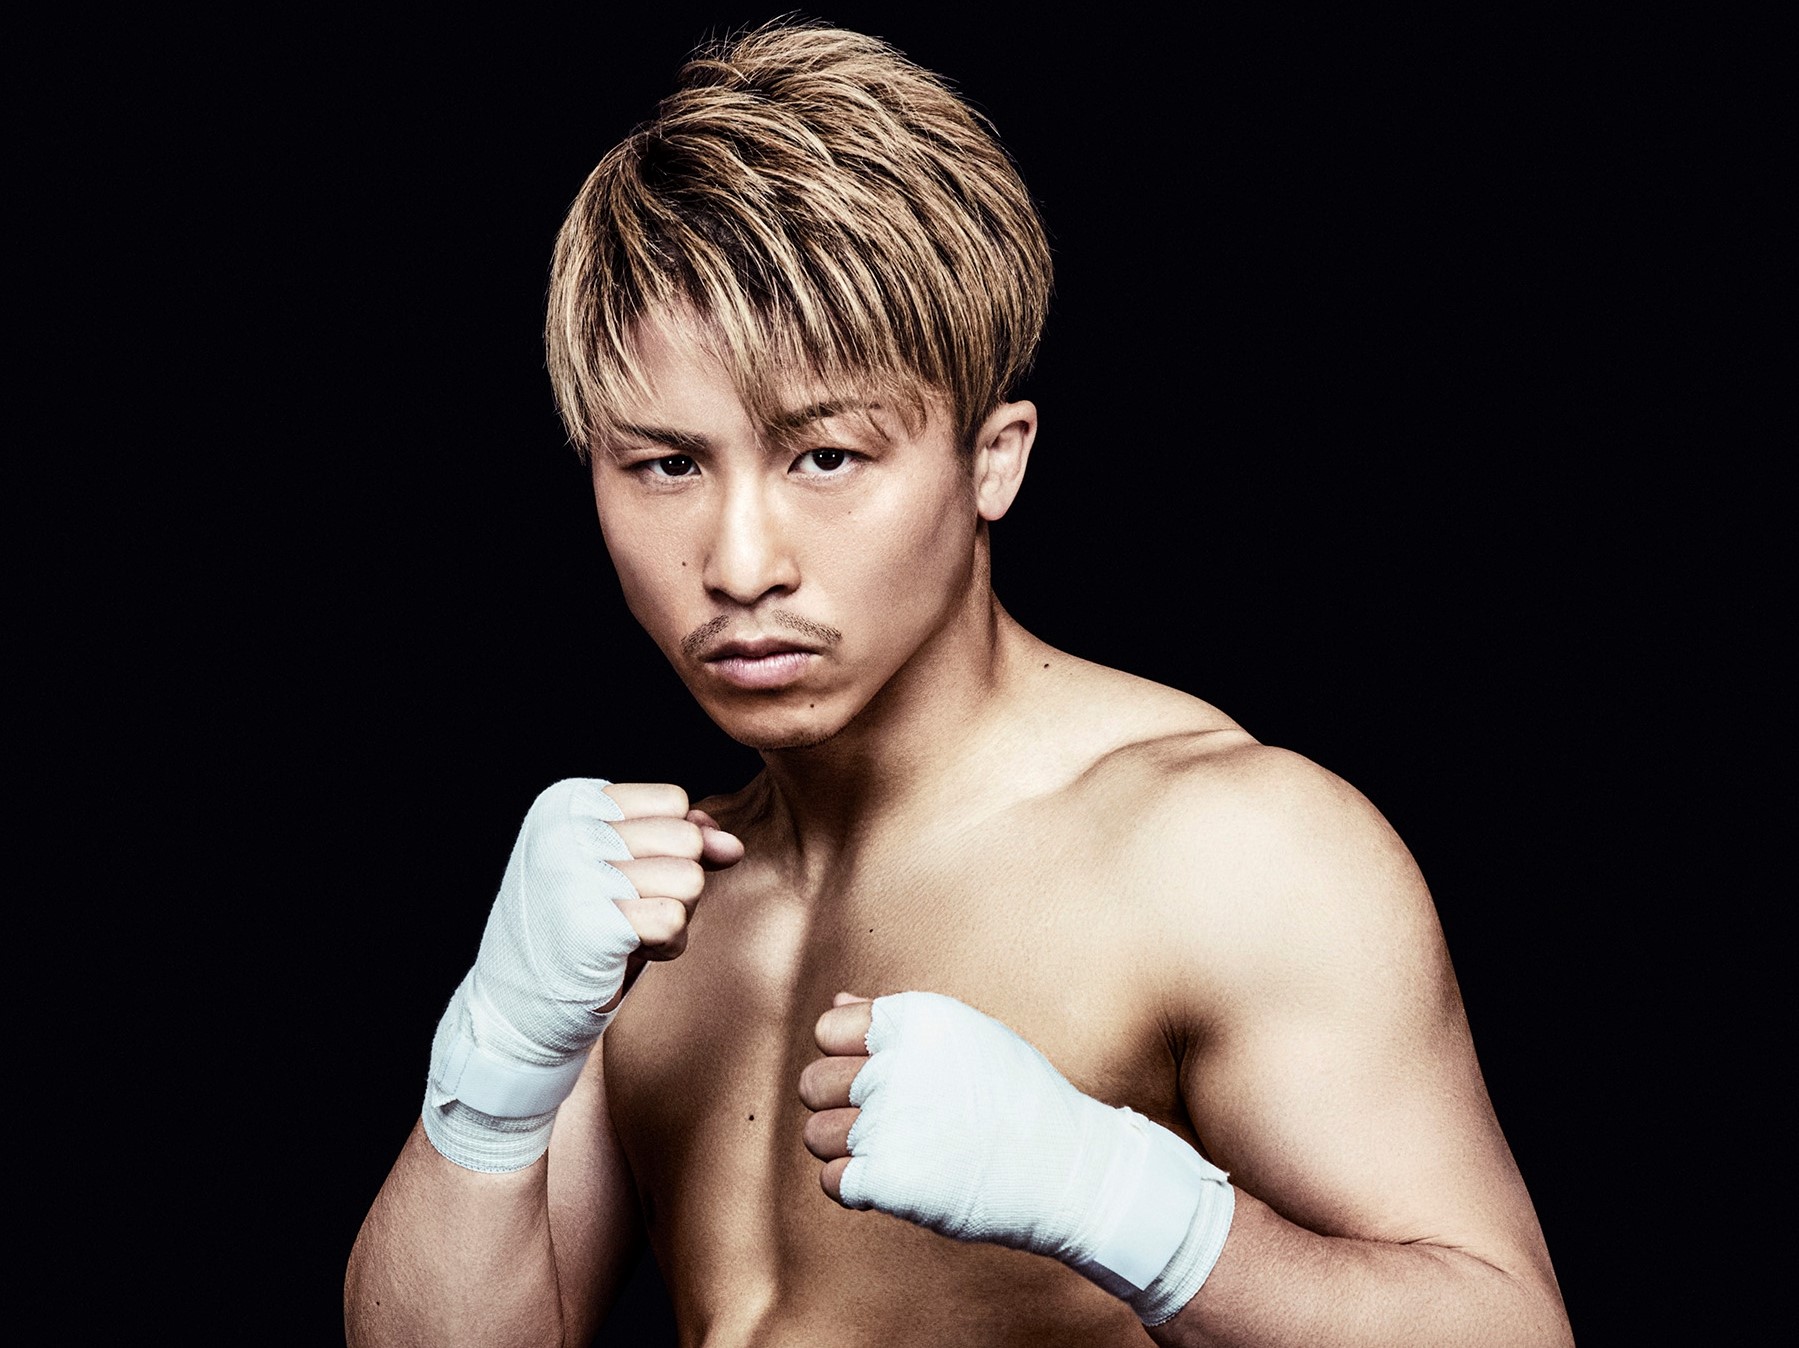 ボクシング3階級王者 井上尚弥選手 Men S Tbcのイメージキャラクターに Tbcグループ株式会社のプレスリリース